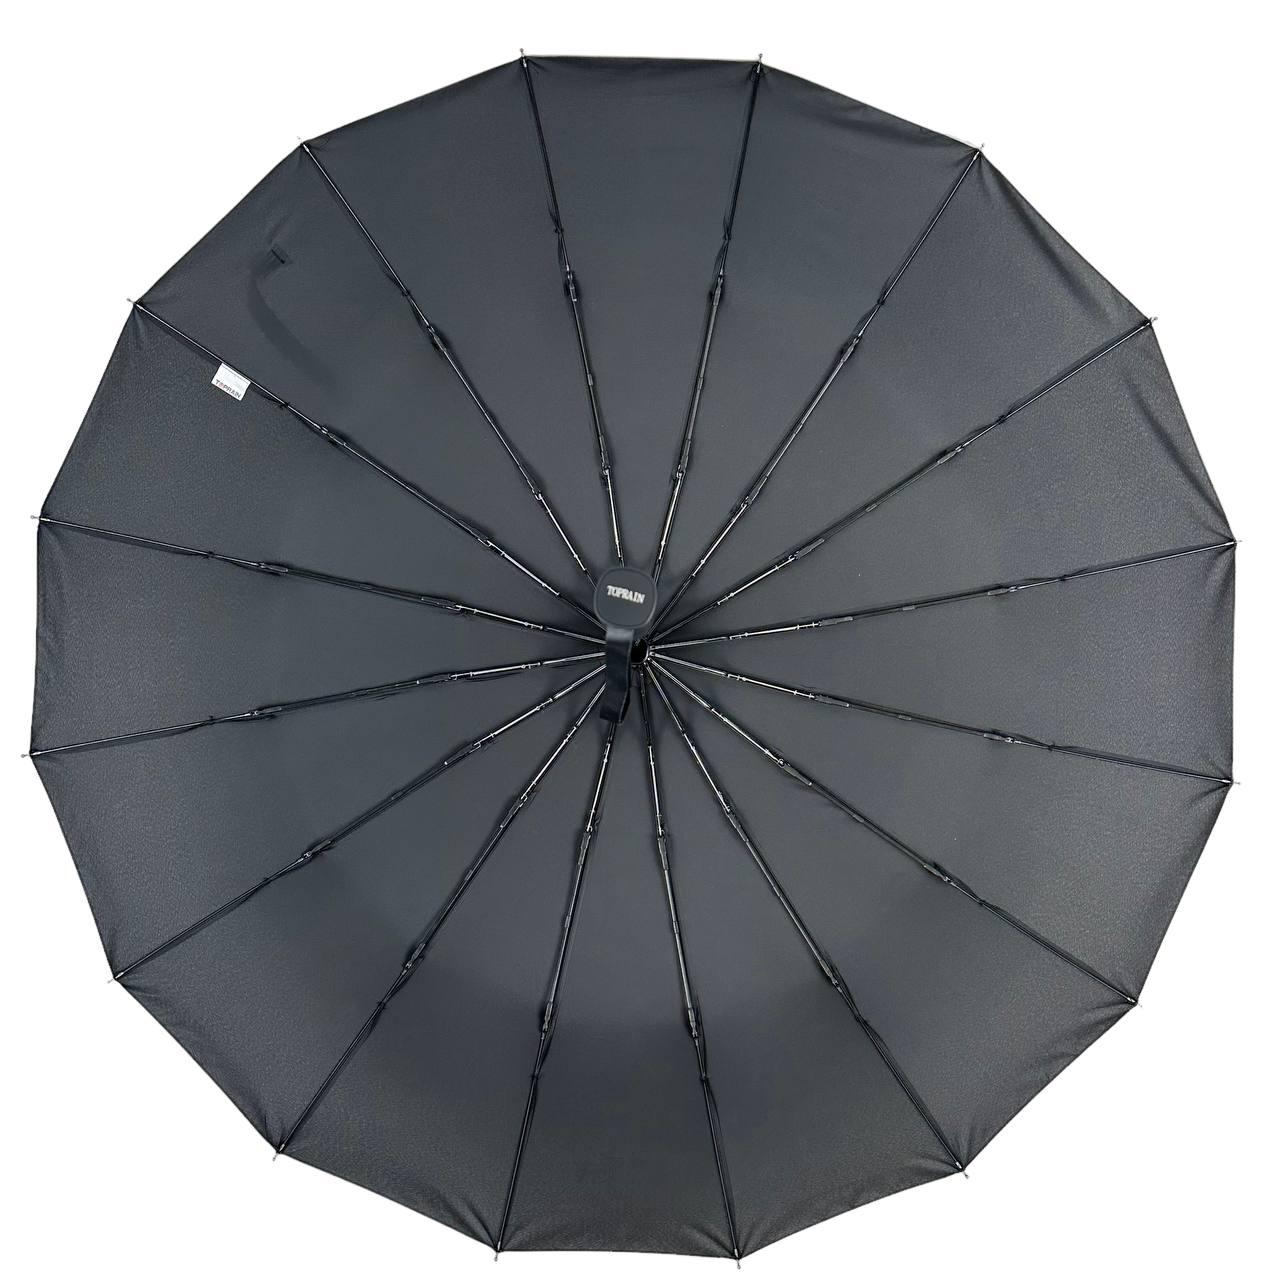 Мужской складной зонтик полный автомат Toprain 102 см черный - фото 4